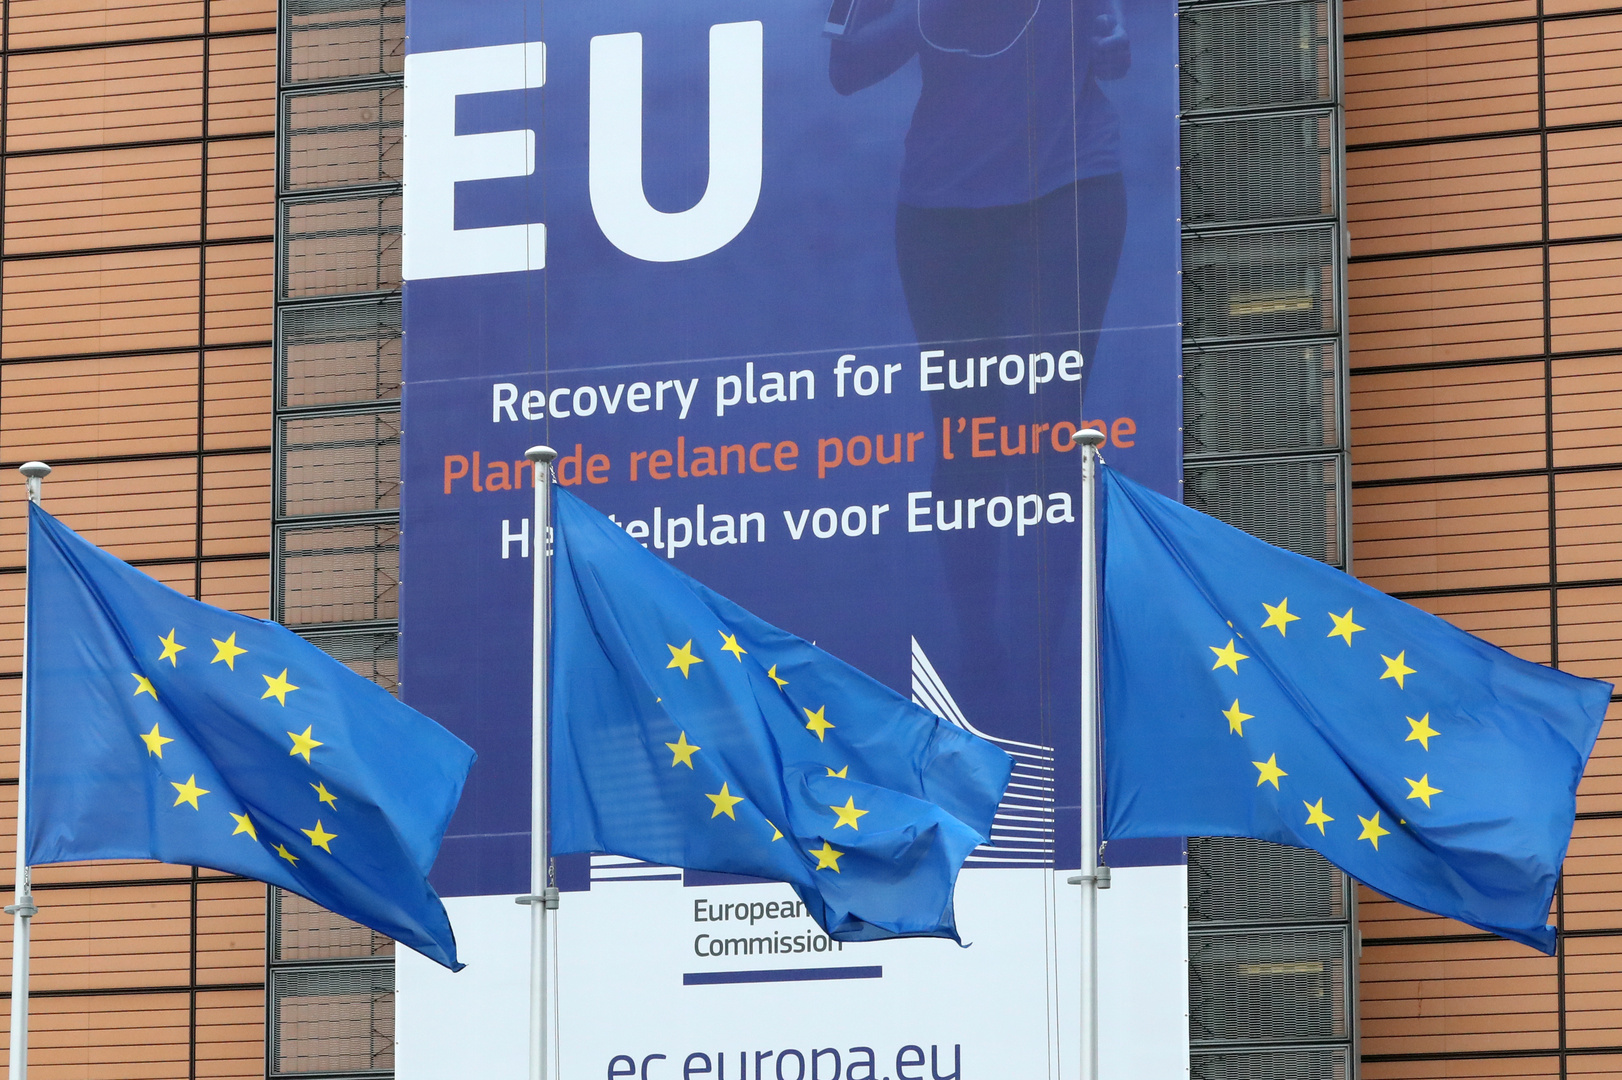 المفوضية الأوروبية تعتزم استثمار 8 مليارات يورو لتحقيق 